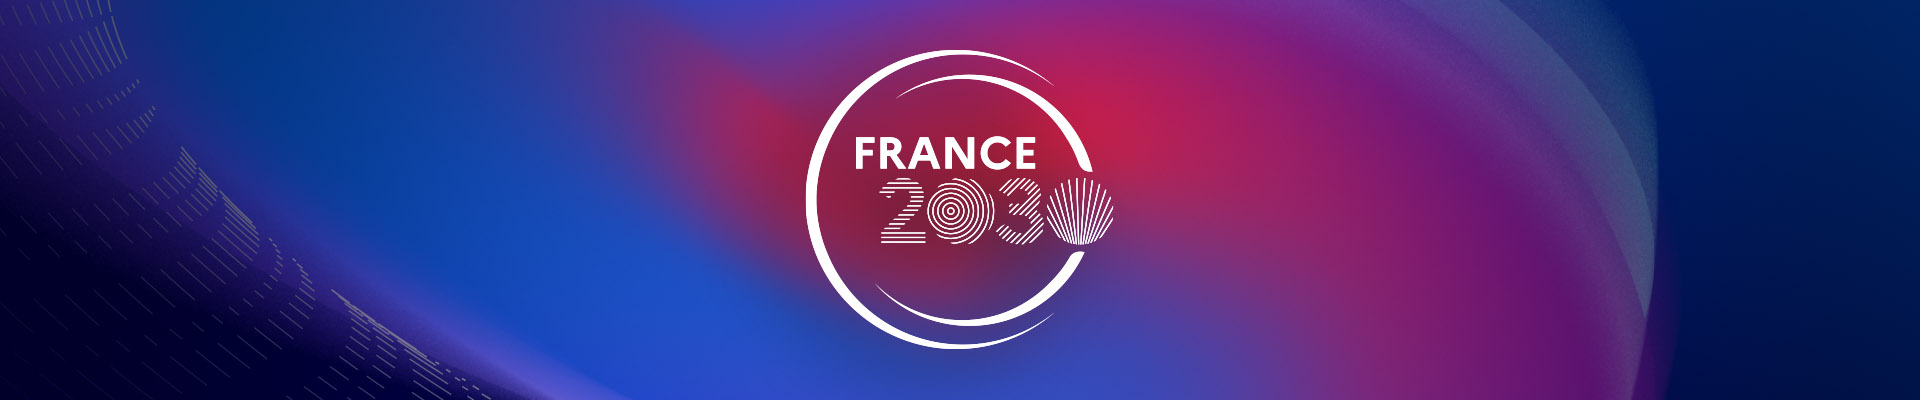 Les objectifs majeurs de France 2030